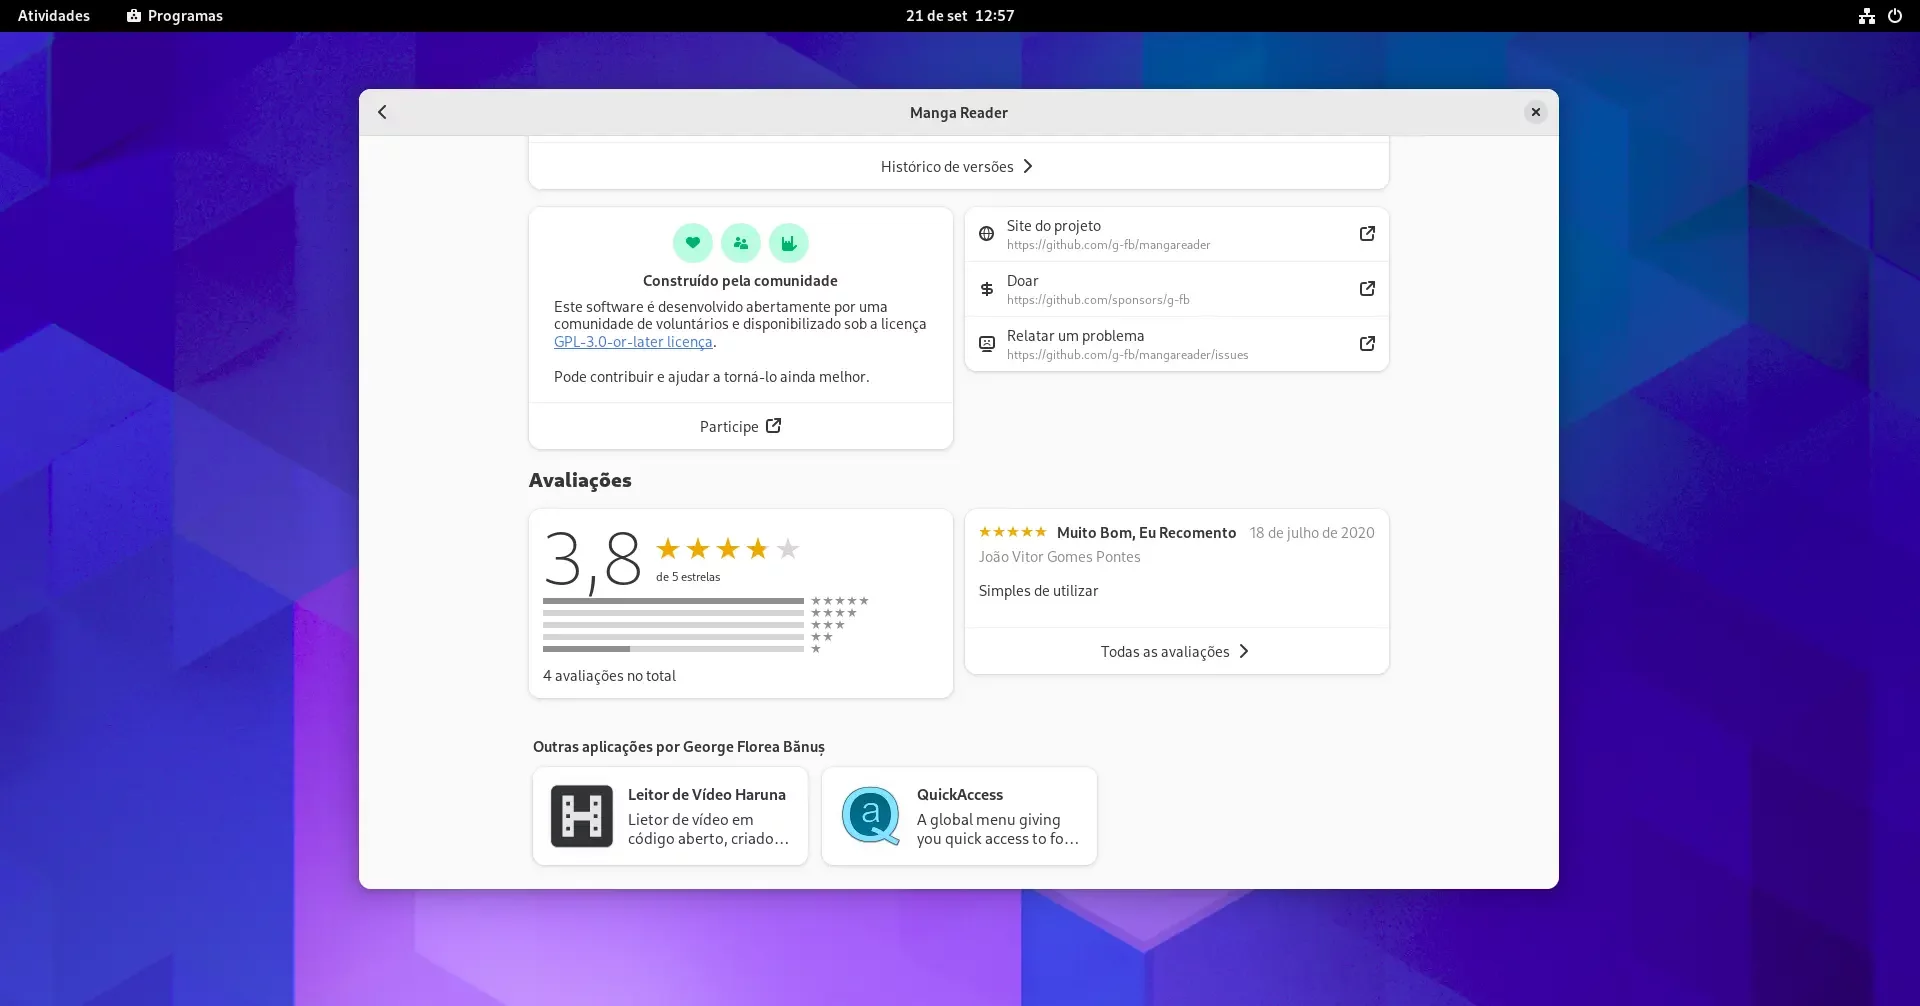 GNOME Software mostrando outros aplicativos do mesmo autor